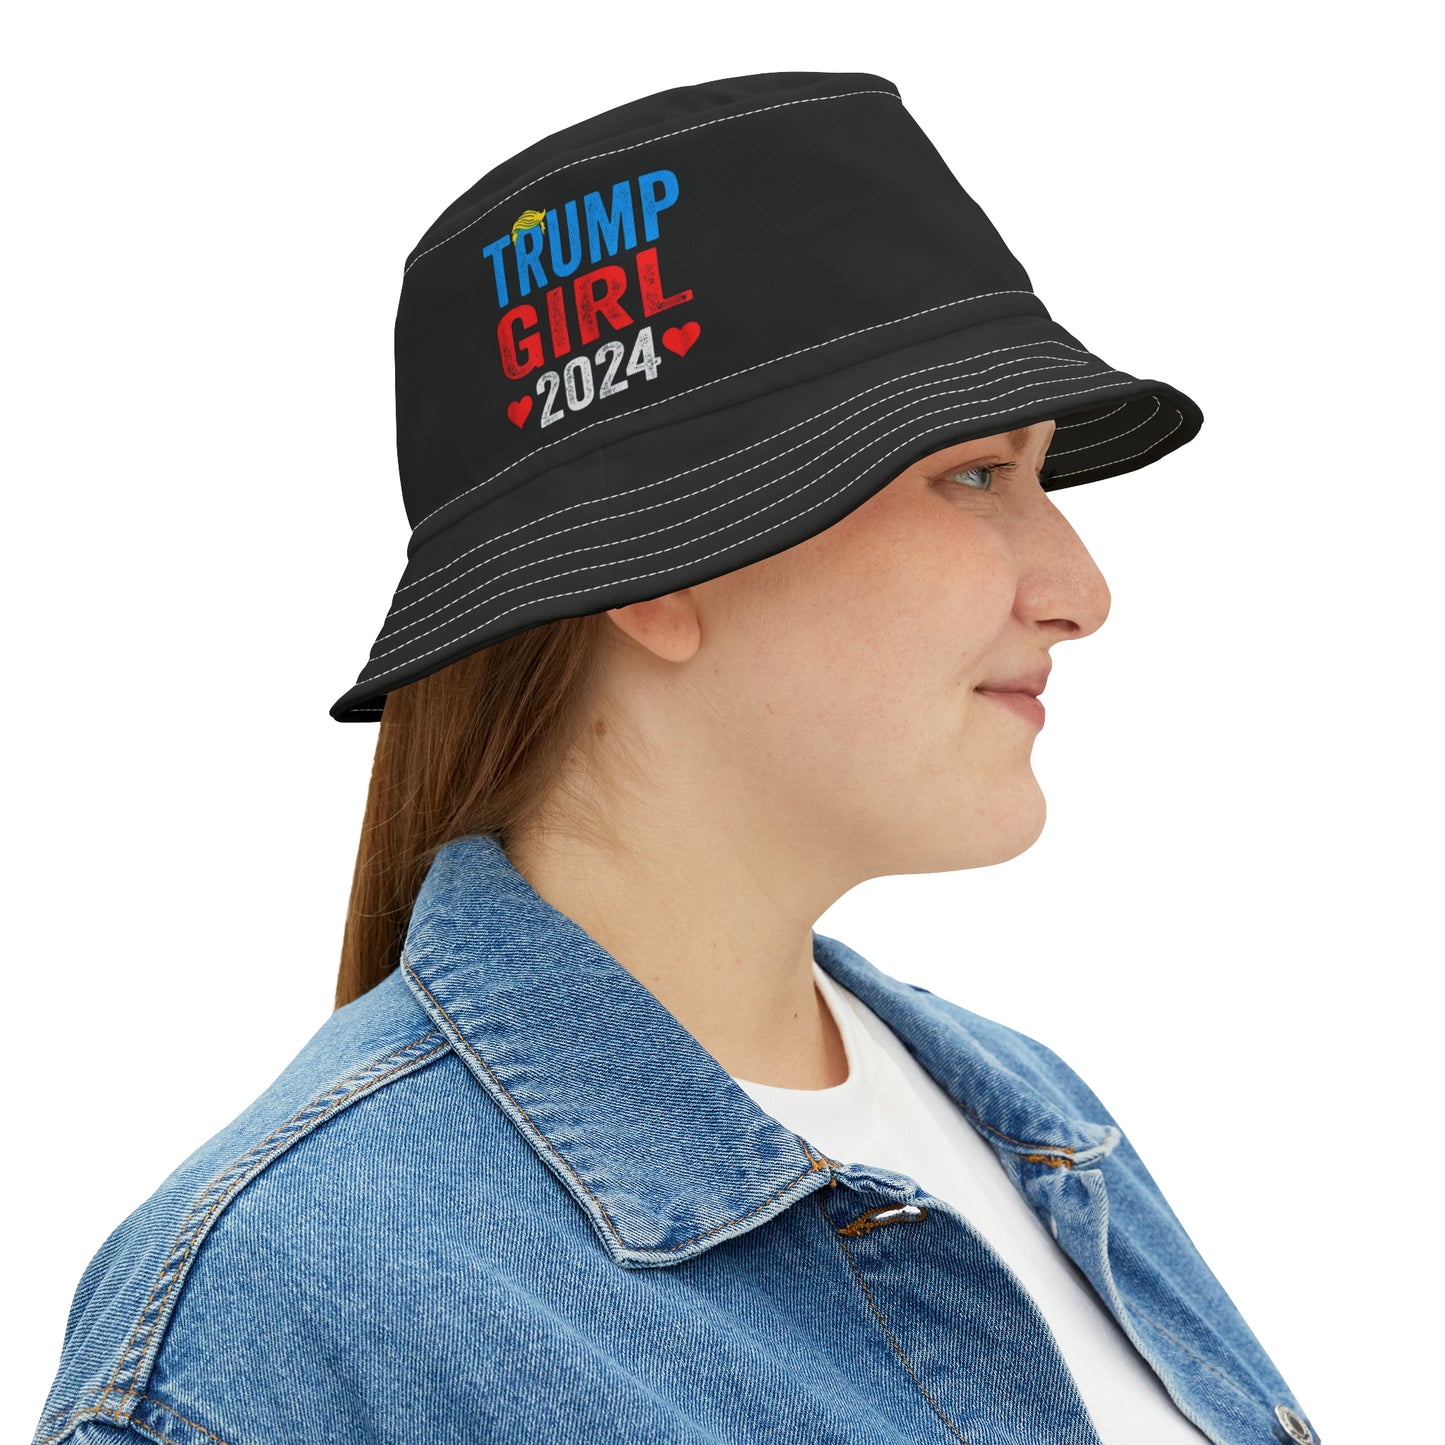 Trump Girl 2024 - Bucket Hat (AOP)